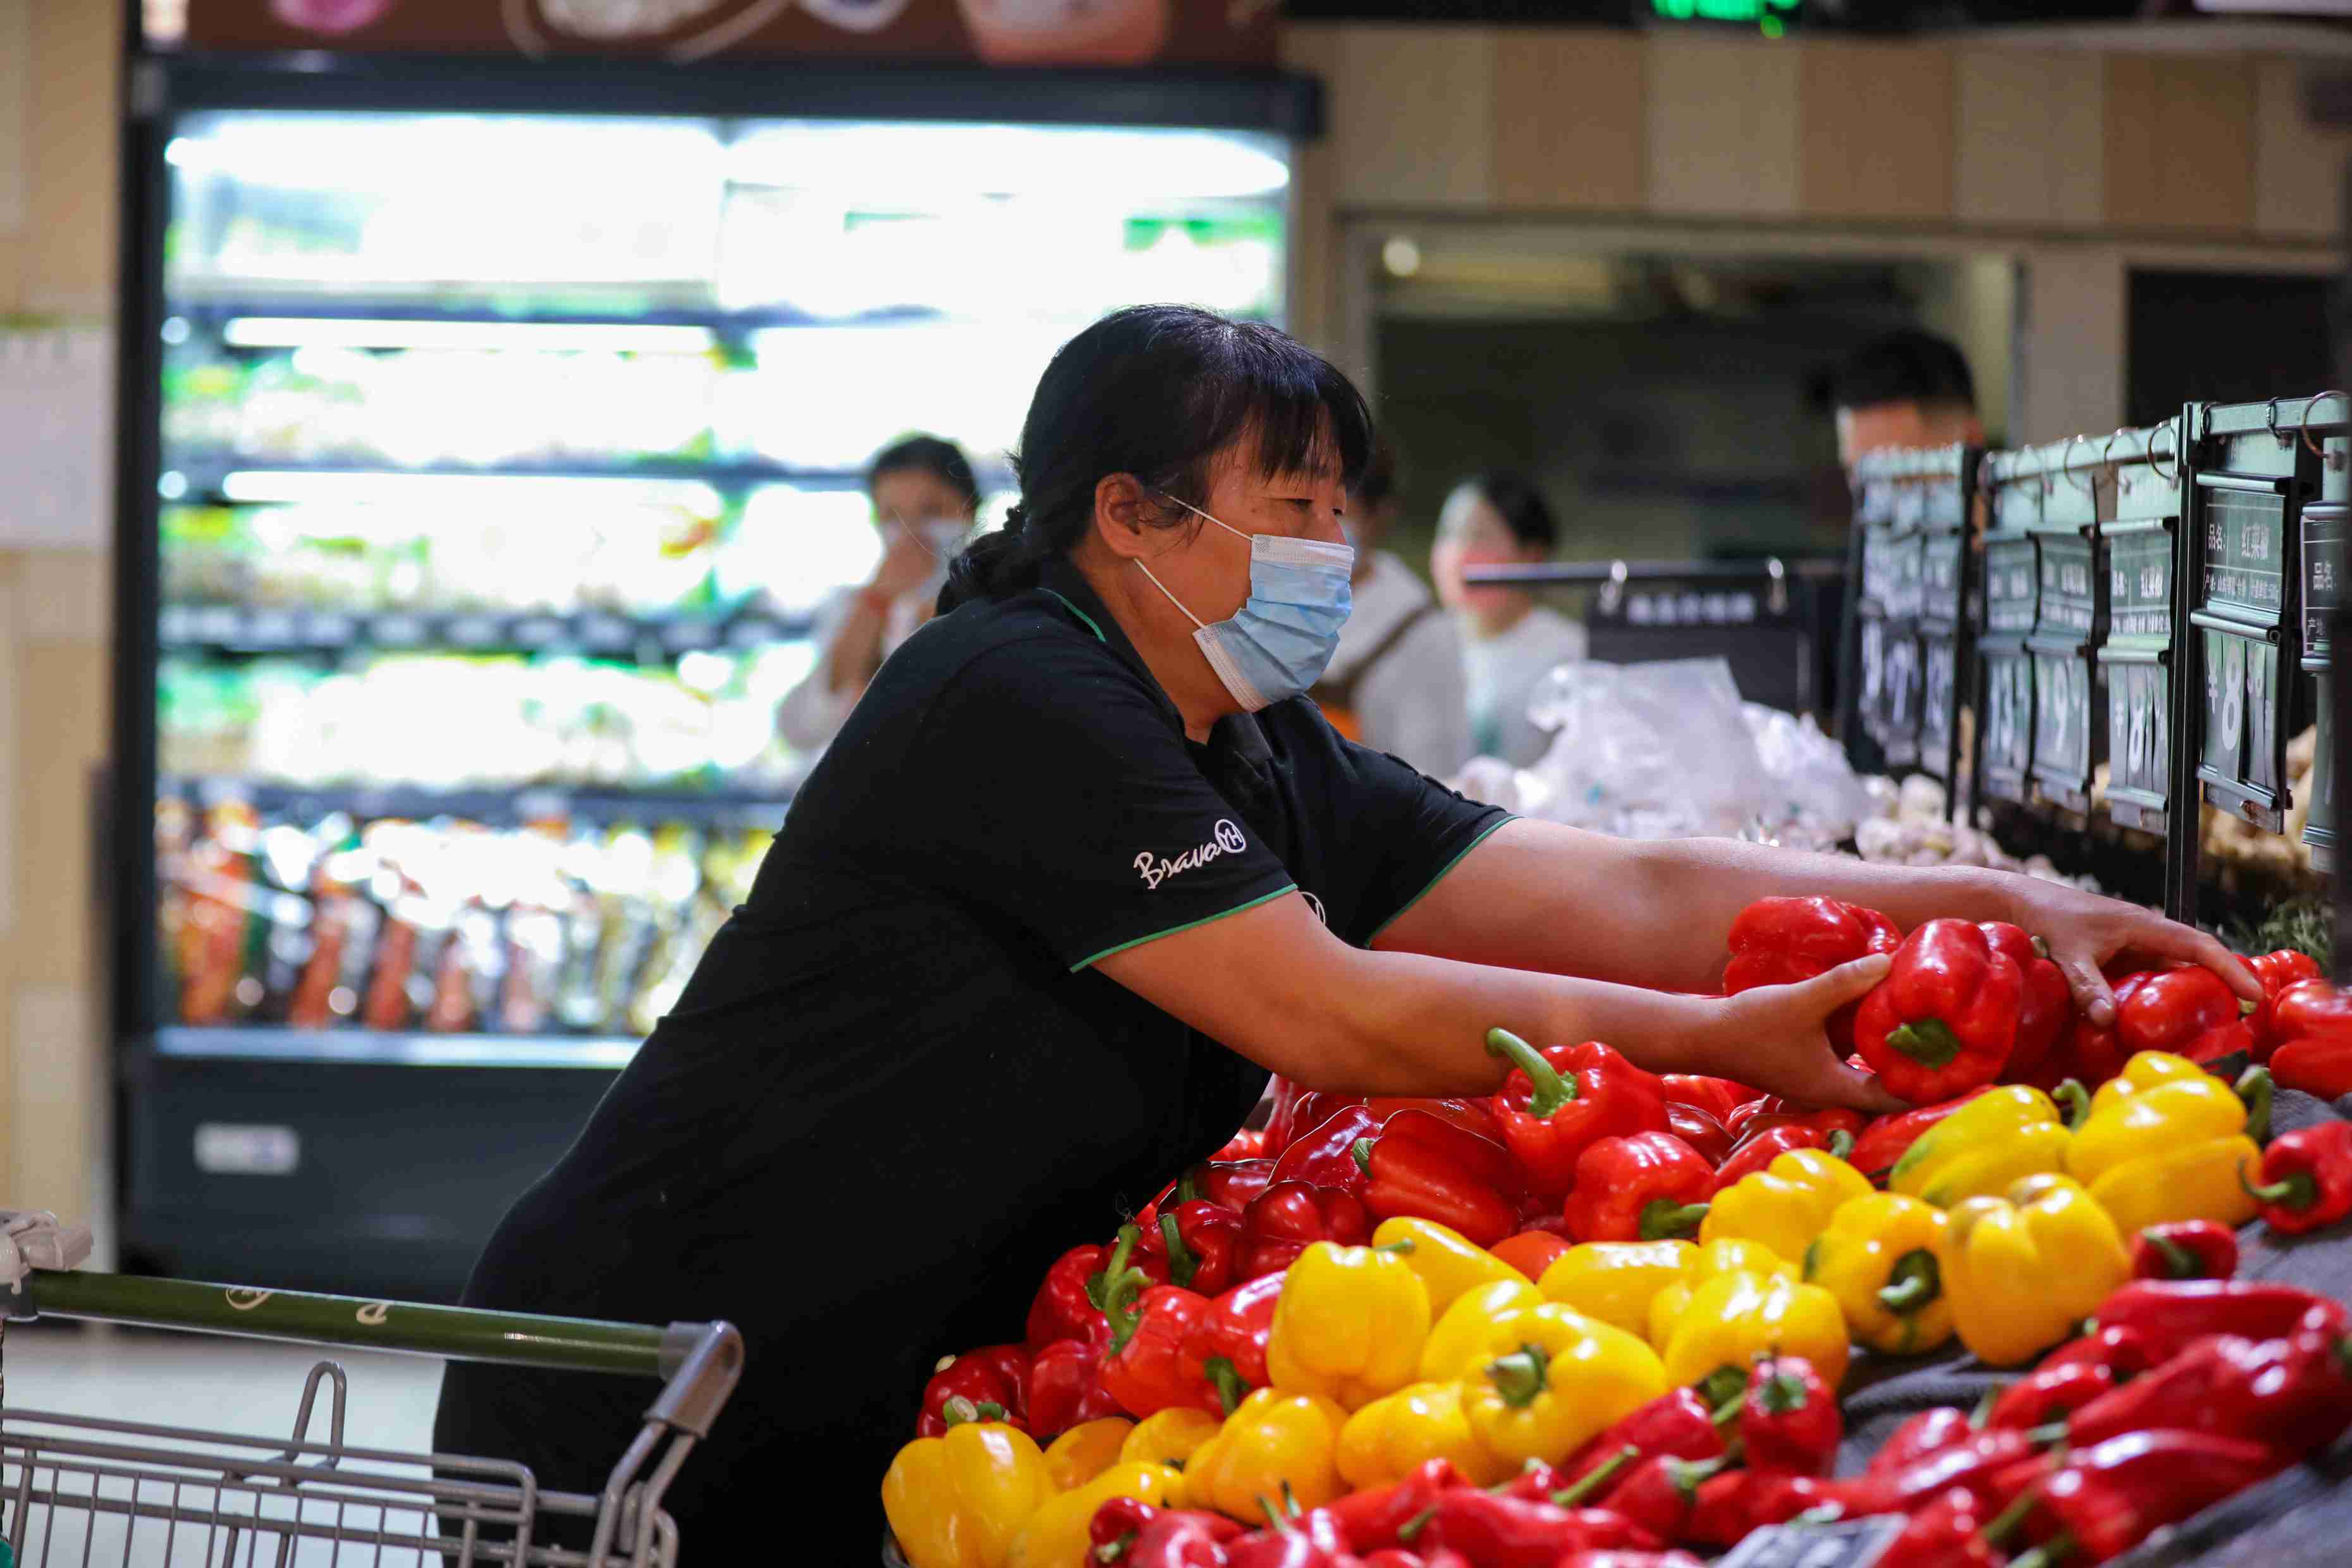 永輝超市工作人員正在擺放蔬菜。